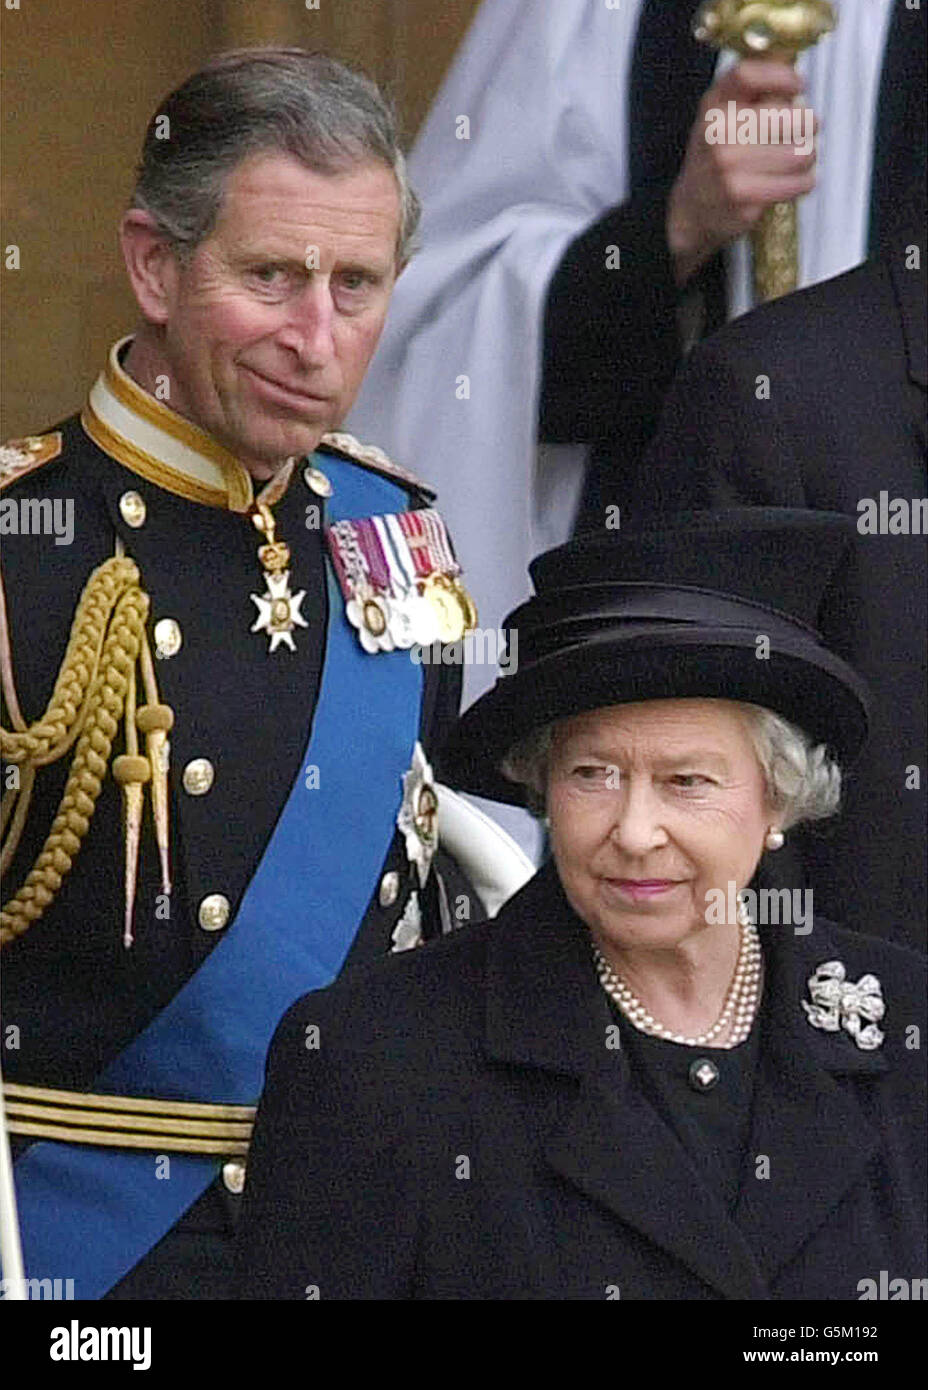 Königin Elizabeth II., rechts, verlässt Westminster Hall, gefolgt vom Prince of Wales, nachdem der Sarg der Queen Mother dort zum Lie-in-State platziert wurde. Die Beerdigung der Königin-Mutter wird am 9. April stattfinden. Stockfoto